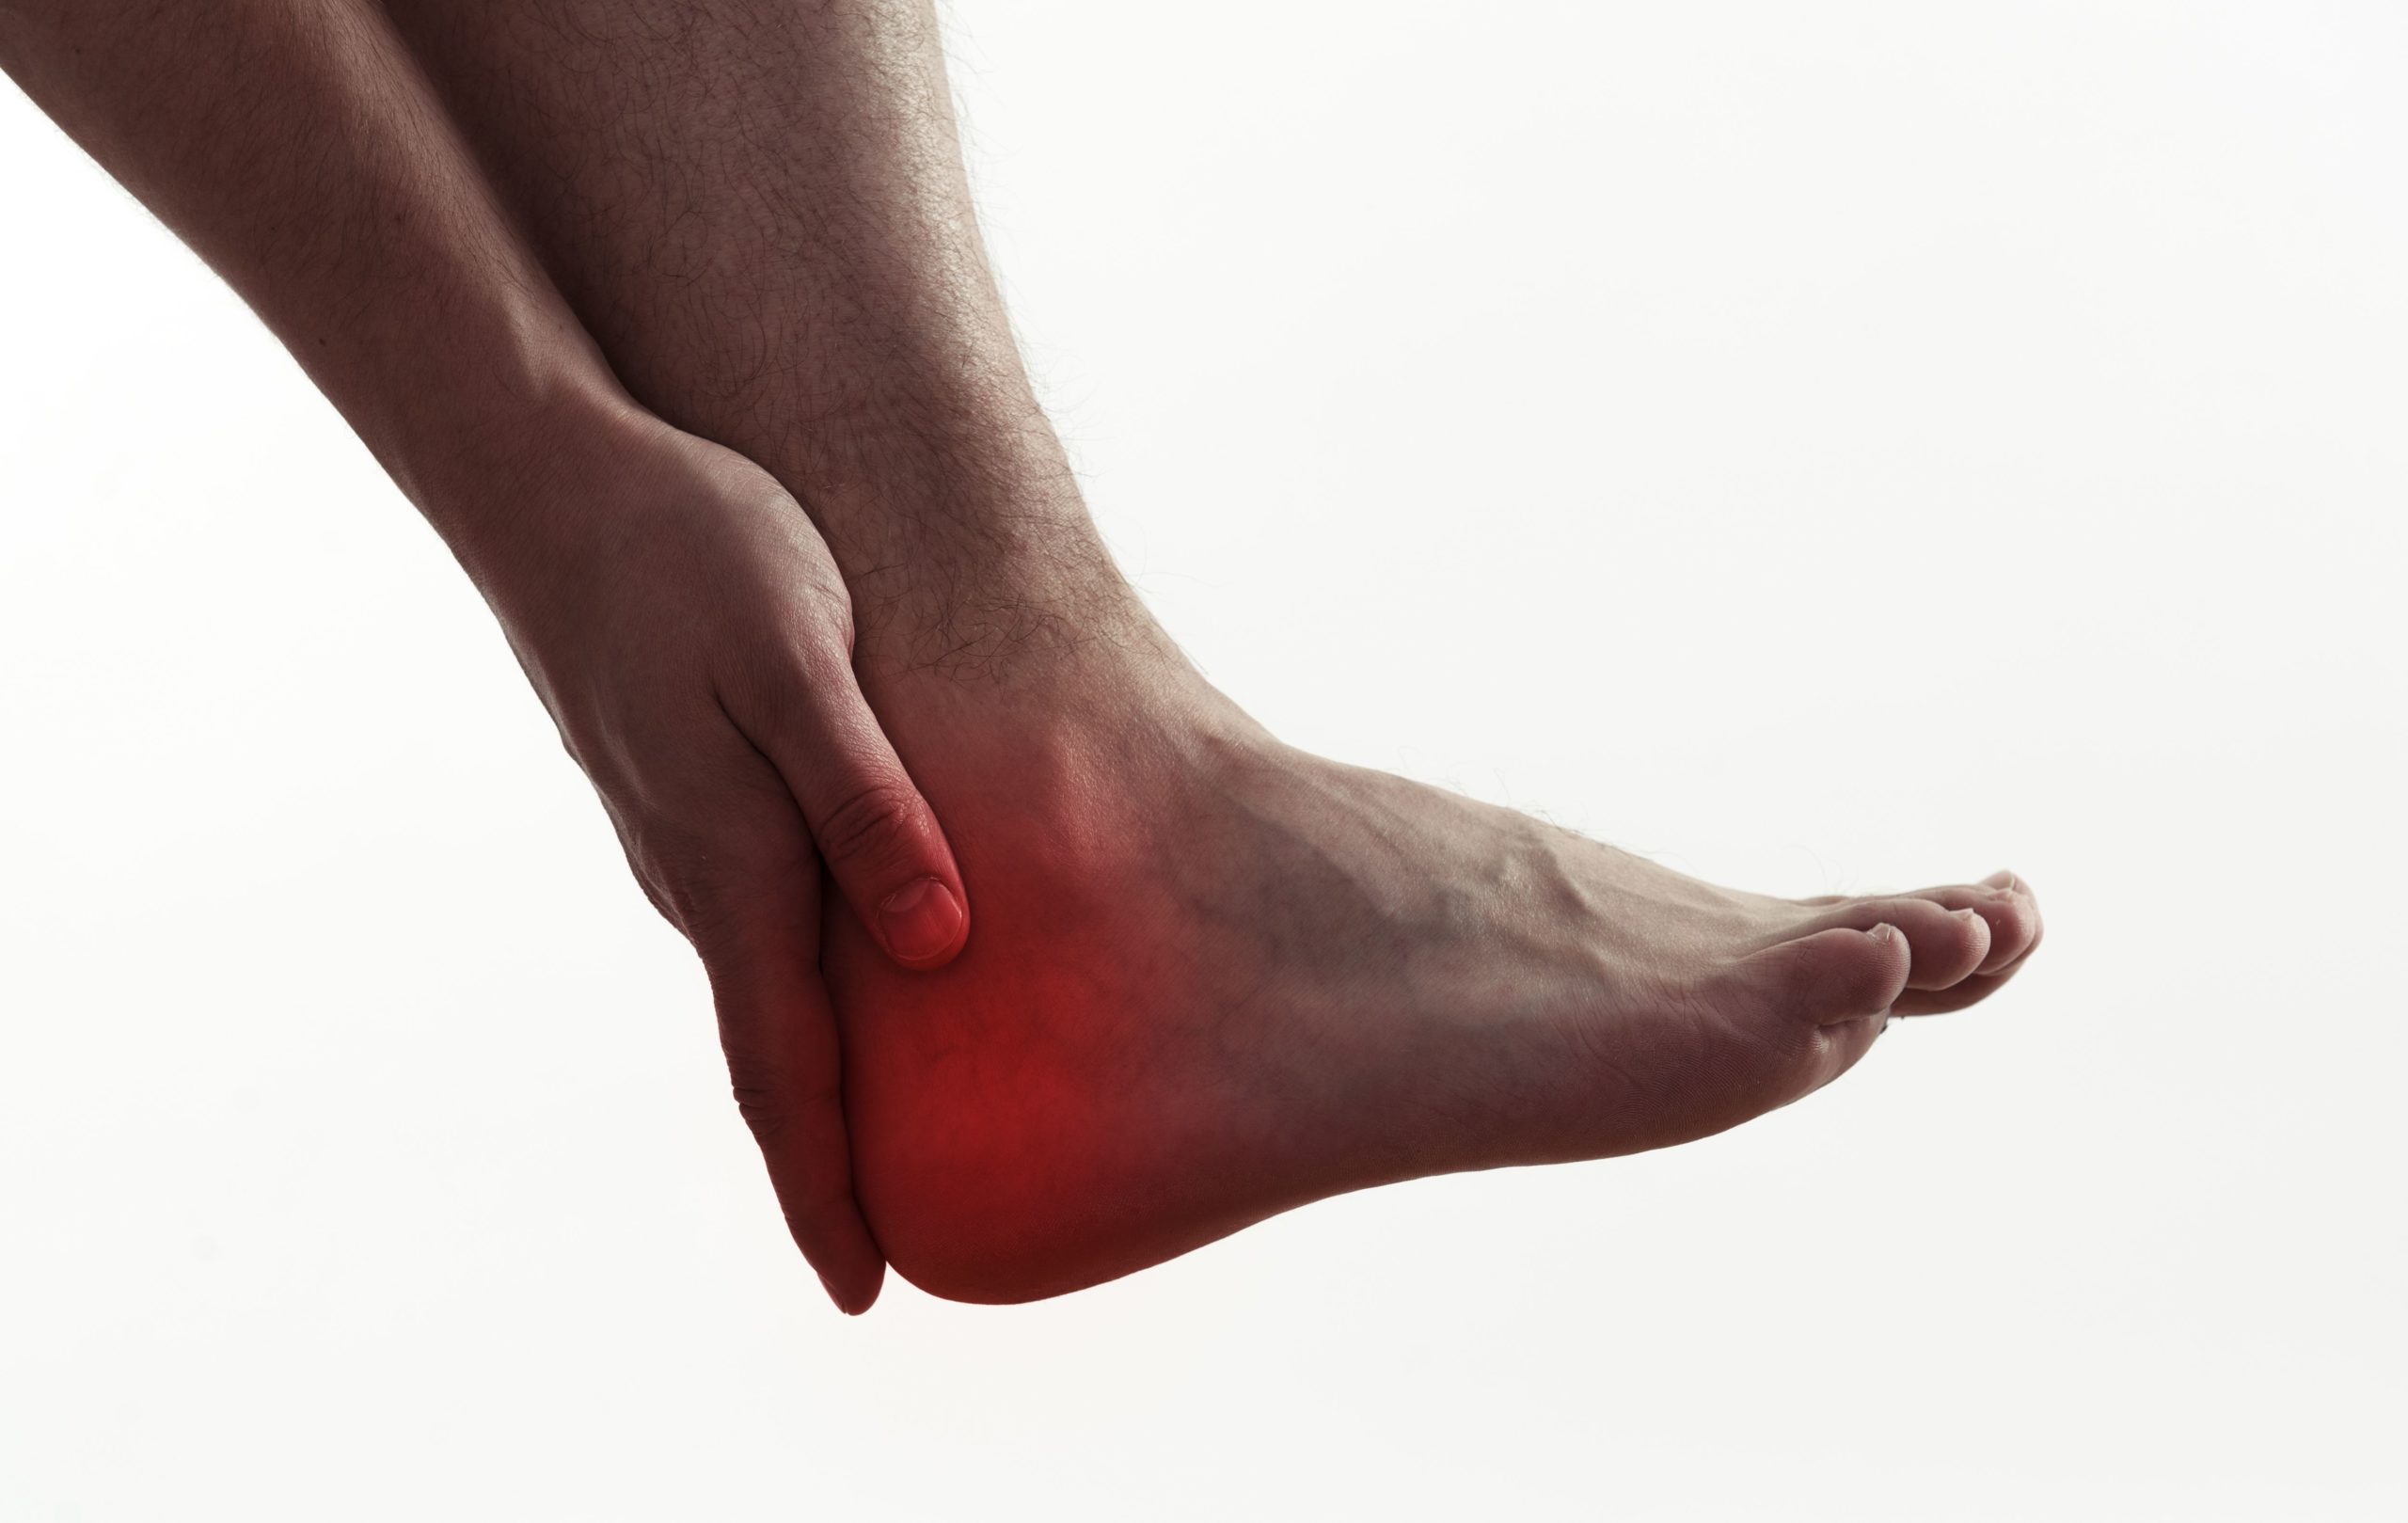 Imagem de uma pessoa sentindo dores no tendão na região do pé.